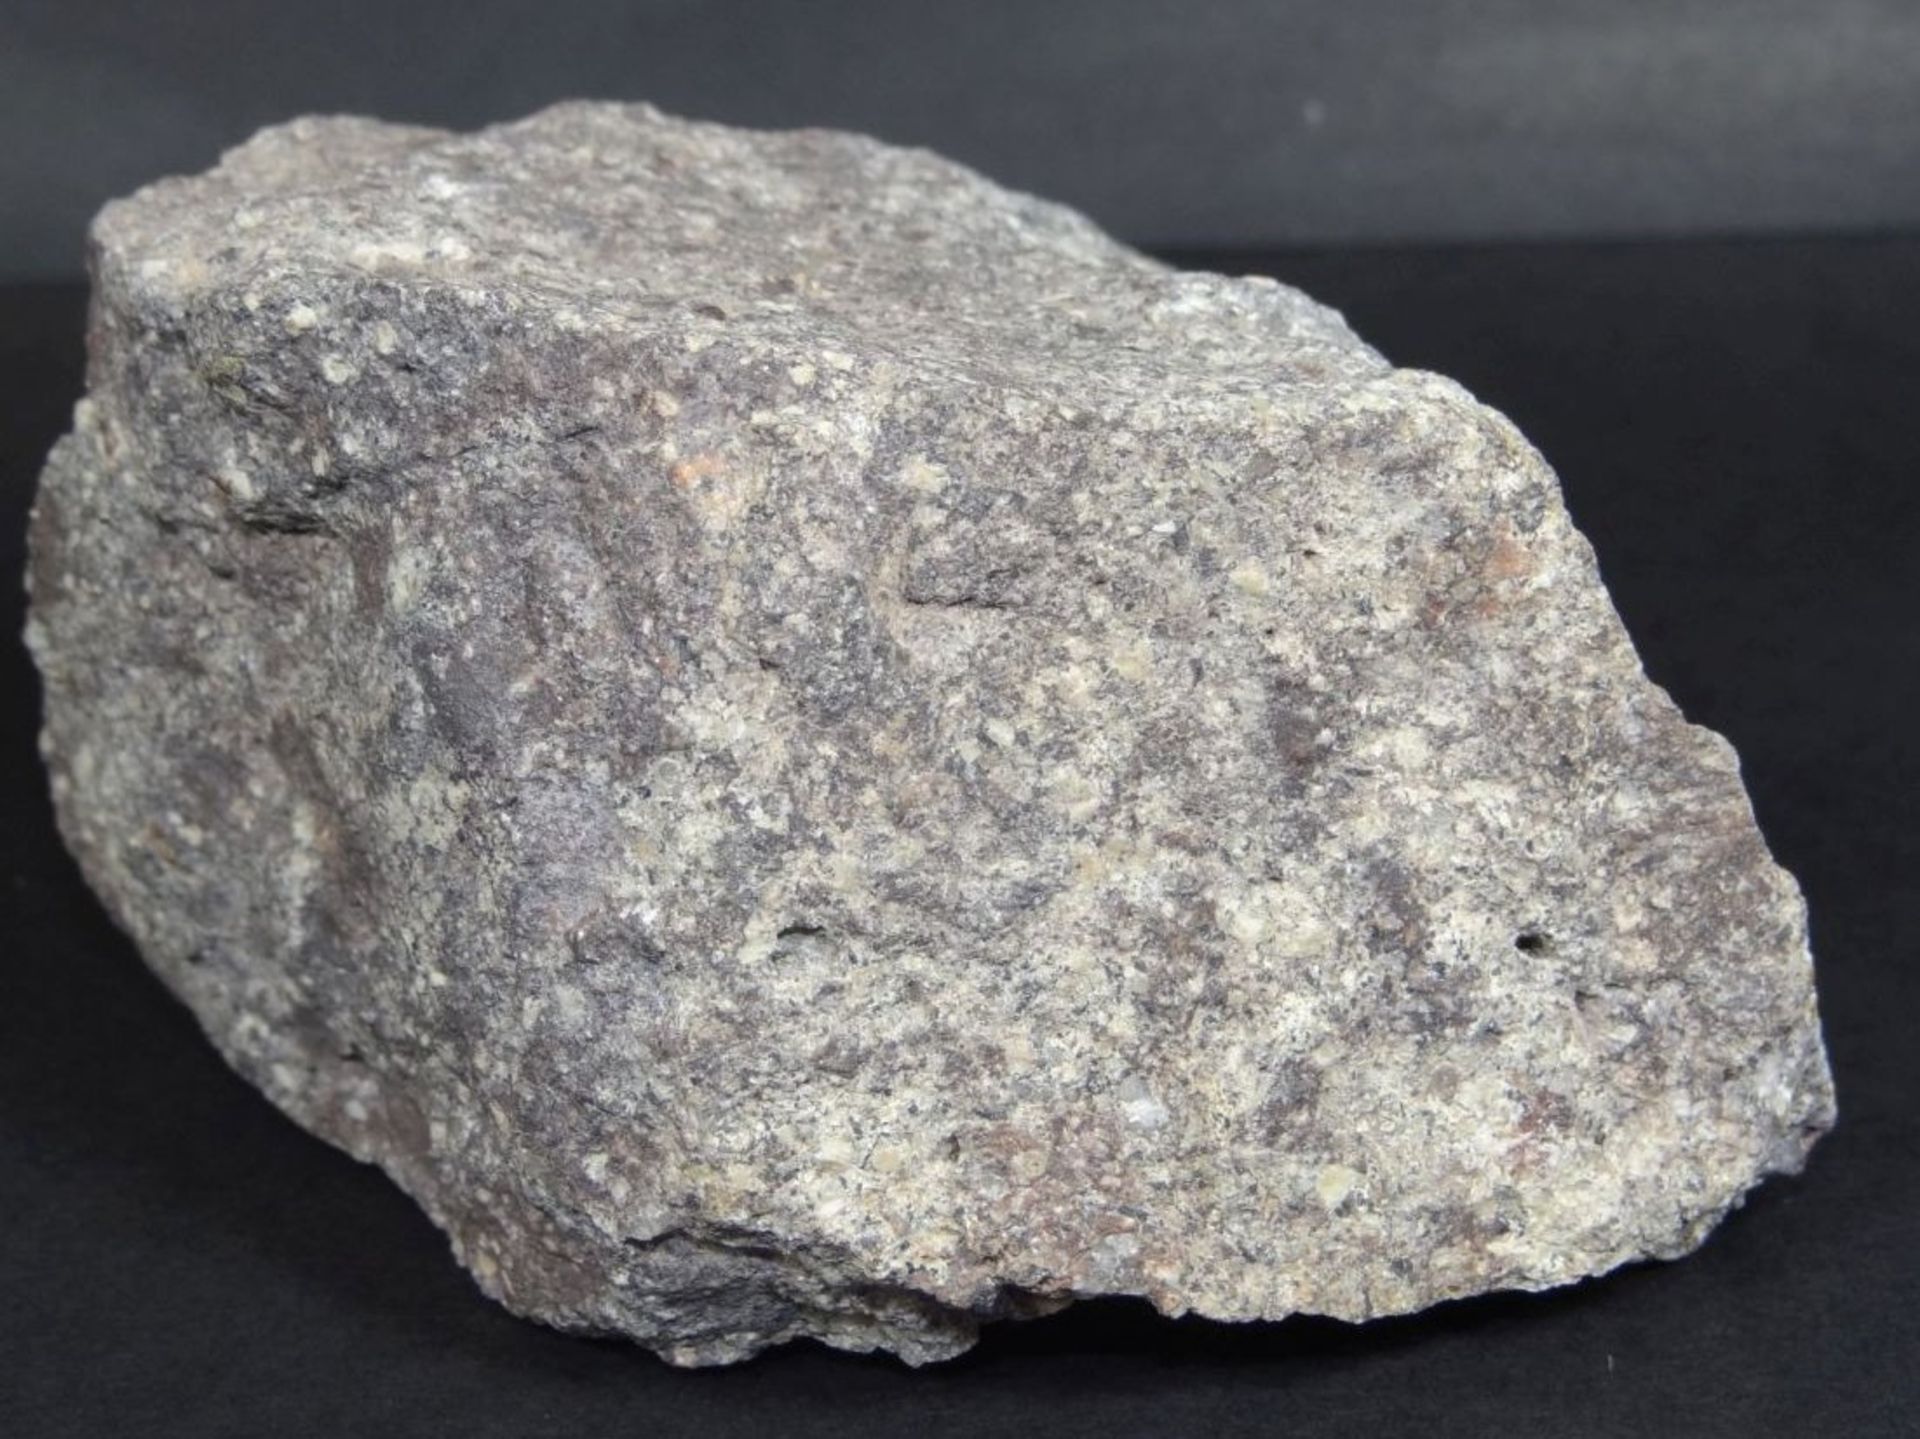 grosses Stück Mineral/Stein?, "Quarzphosphor" Fundort Bozen, 11x8x6 c - Bild 2 aus 4